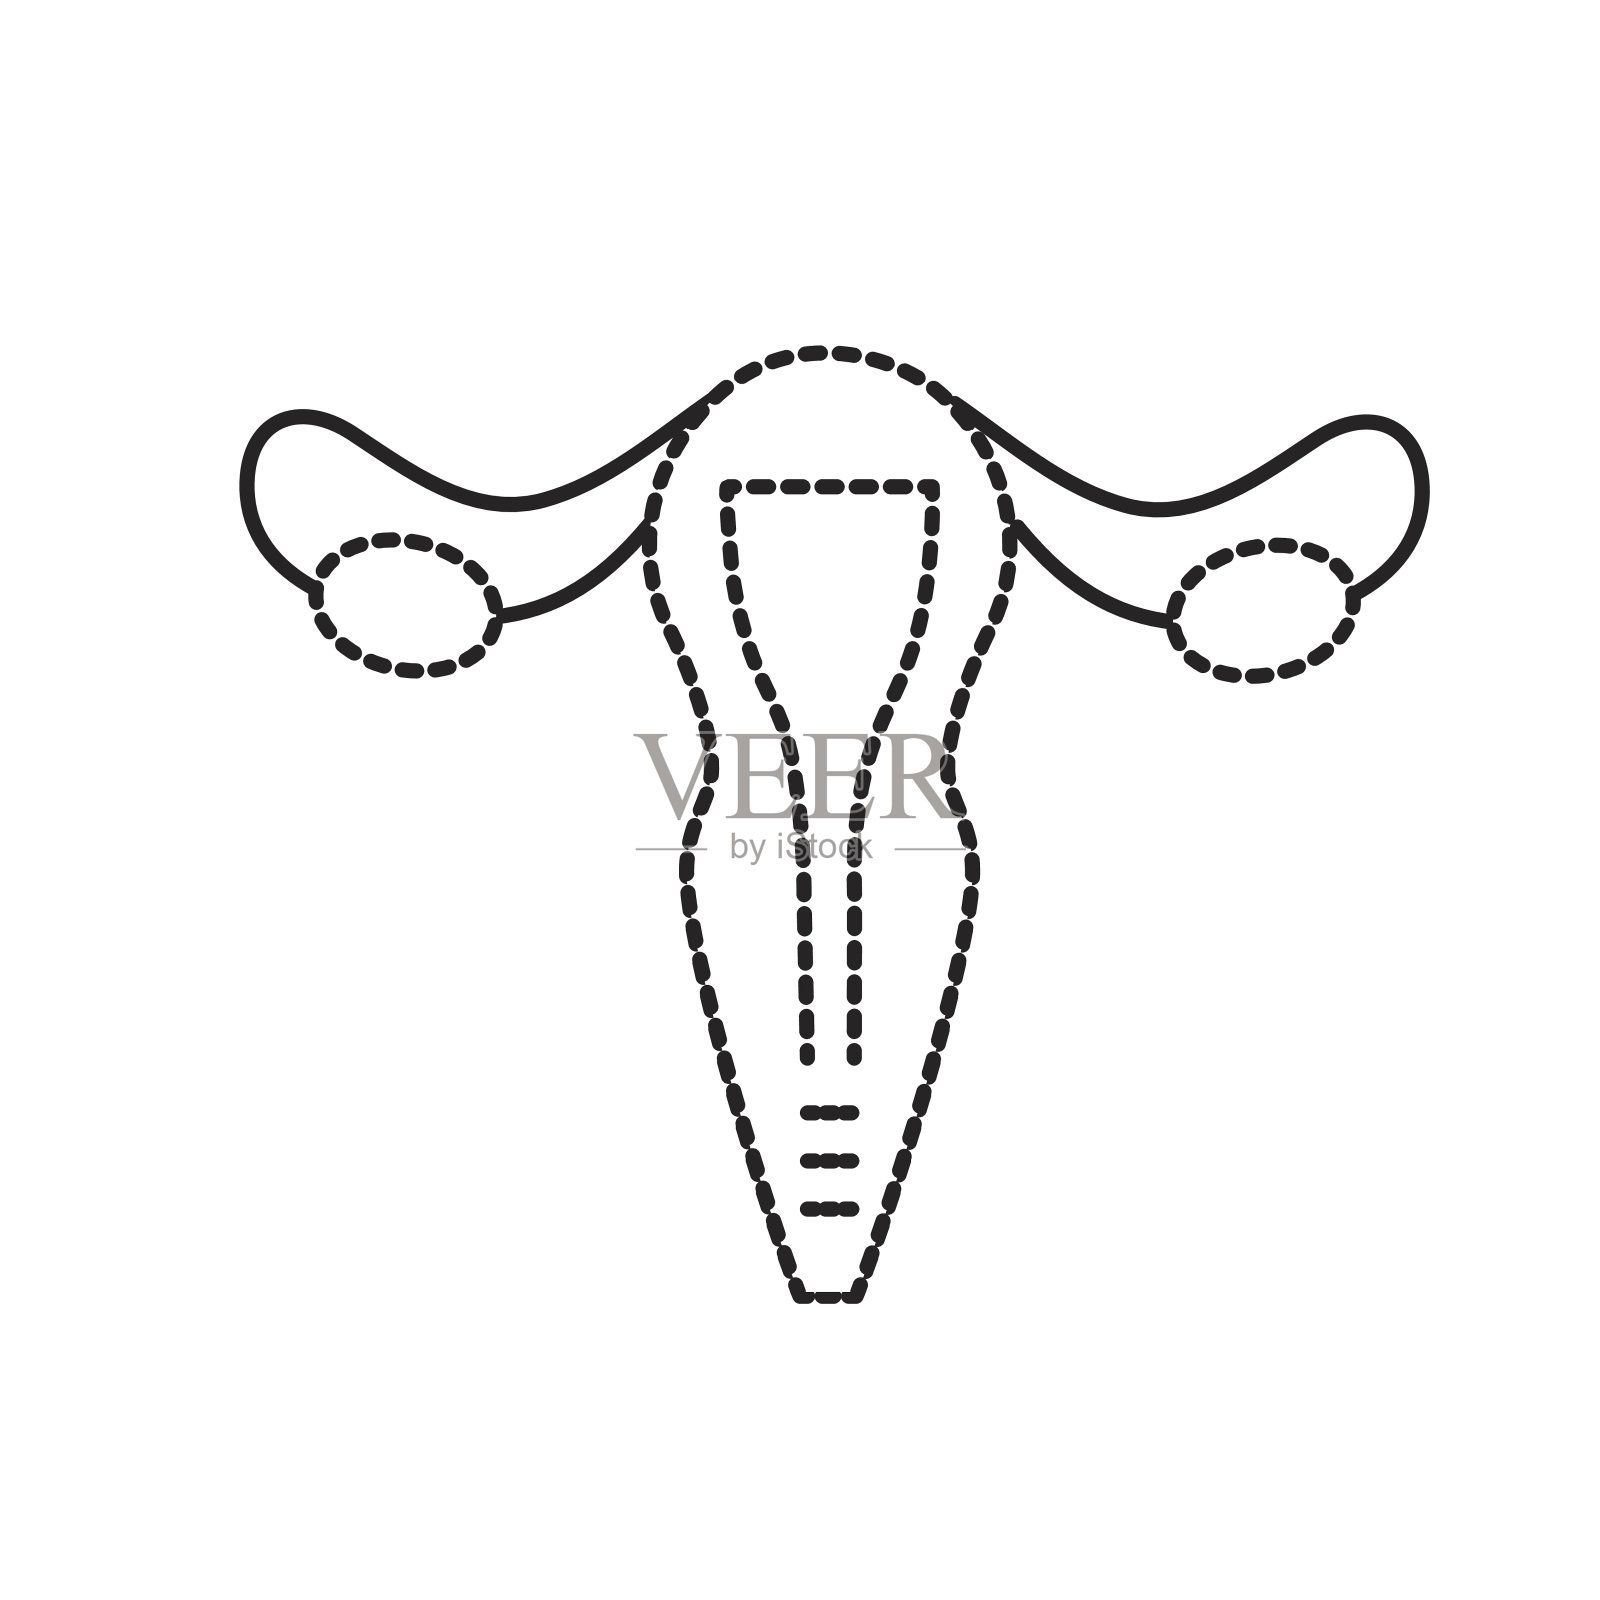 女性生殖系统解剖学各器官位置示意图子宫、子宫颈、卵巢、输卵管。妇女的健康。矢量插图。插画图片素材_ID:422300788-Veer图库